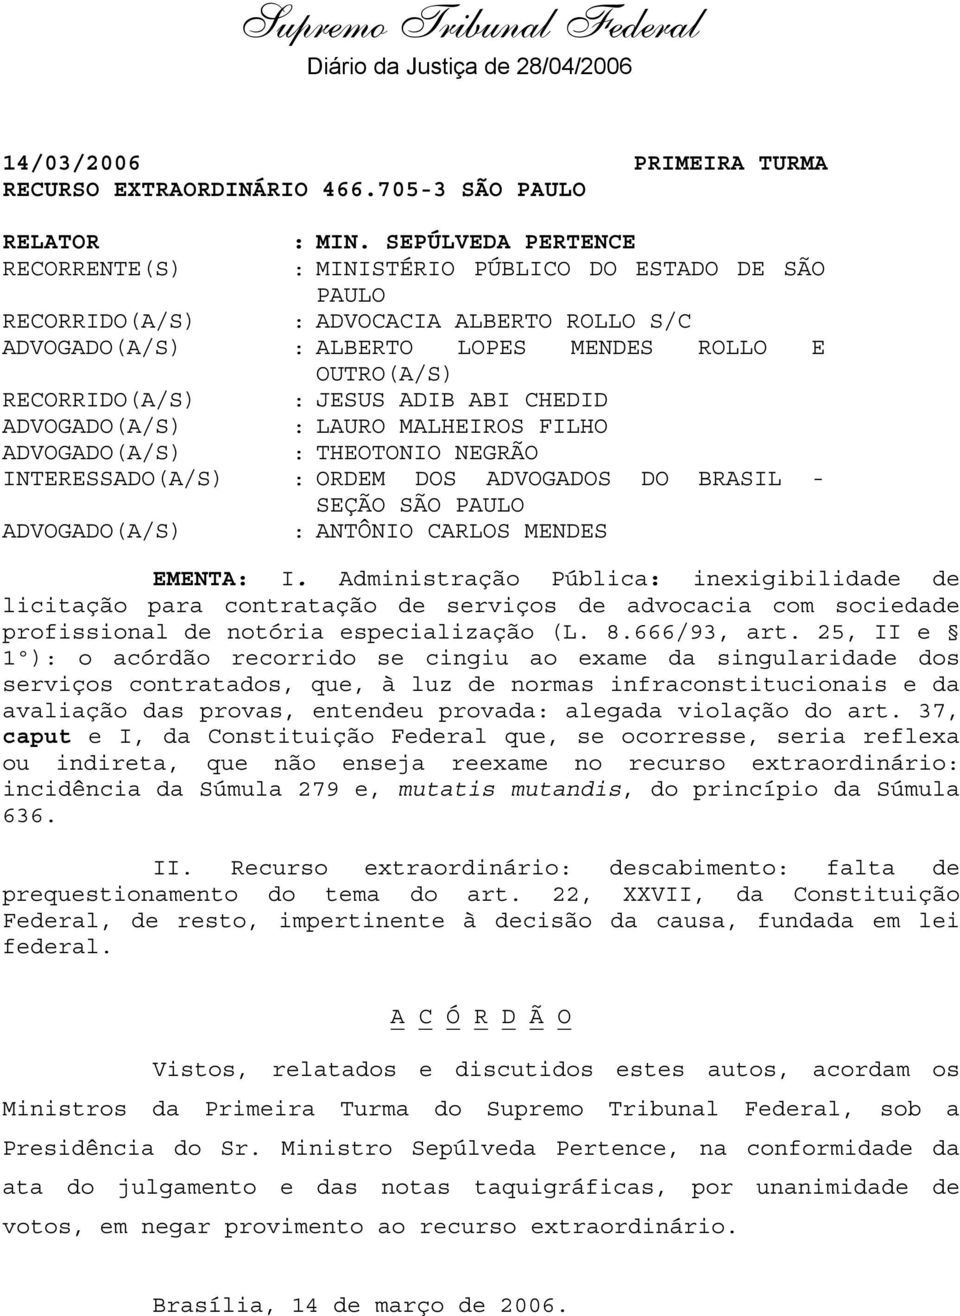 JESUS ADIB ABI CHEDID ADVOGADO(A/S) : LAURO MALHEIROS FILHO ADVOGADO(A/S) : THEOTONIO NEGRÃO INTERESSADO(A/S) : ORDEM DOS ADVOGADOS DO BRASIL - SEÇÃO SÃO PAULO ADVOGADO(A/S) : ANTÔNIO CARLOS MENDES